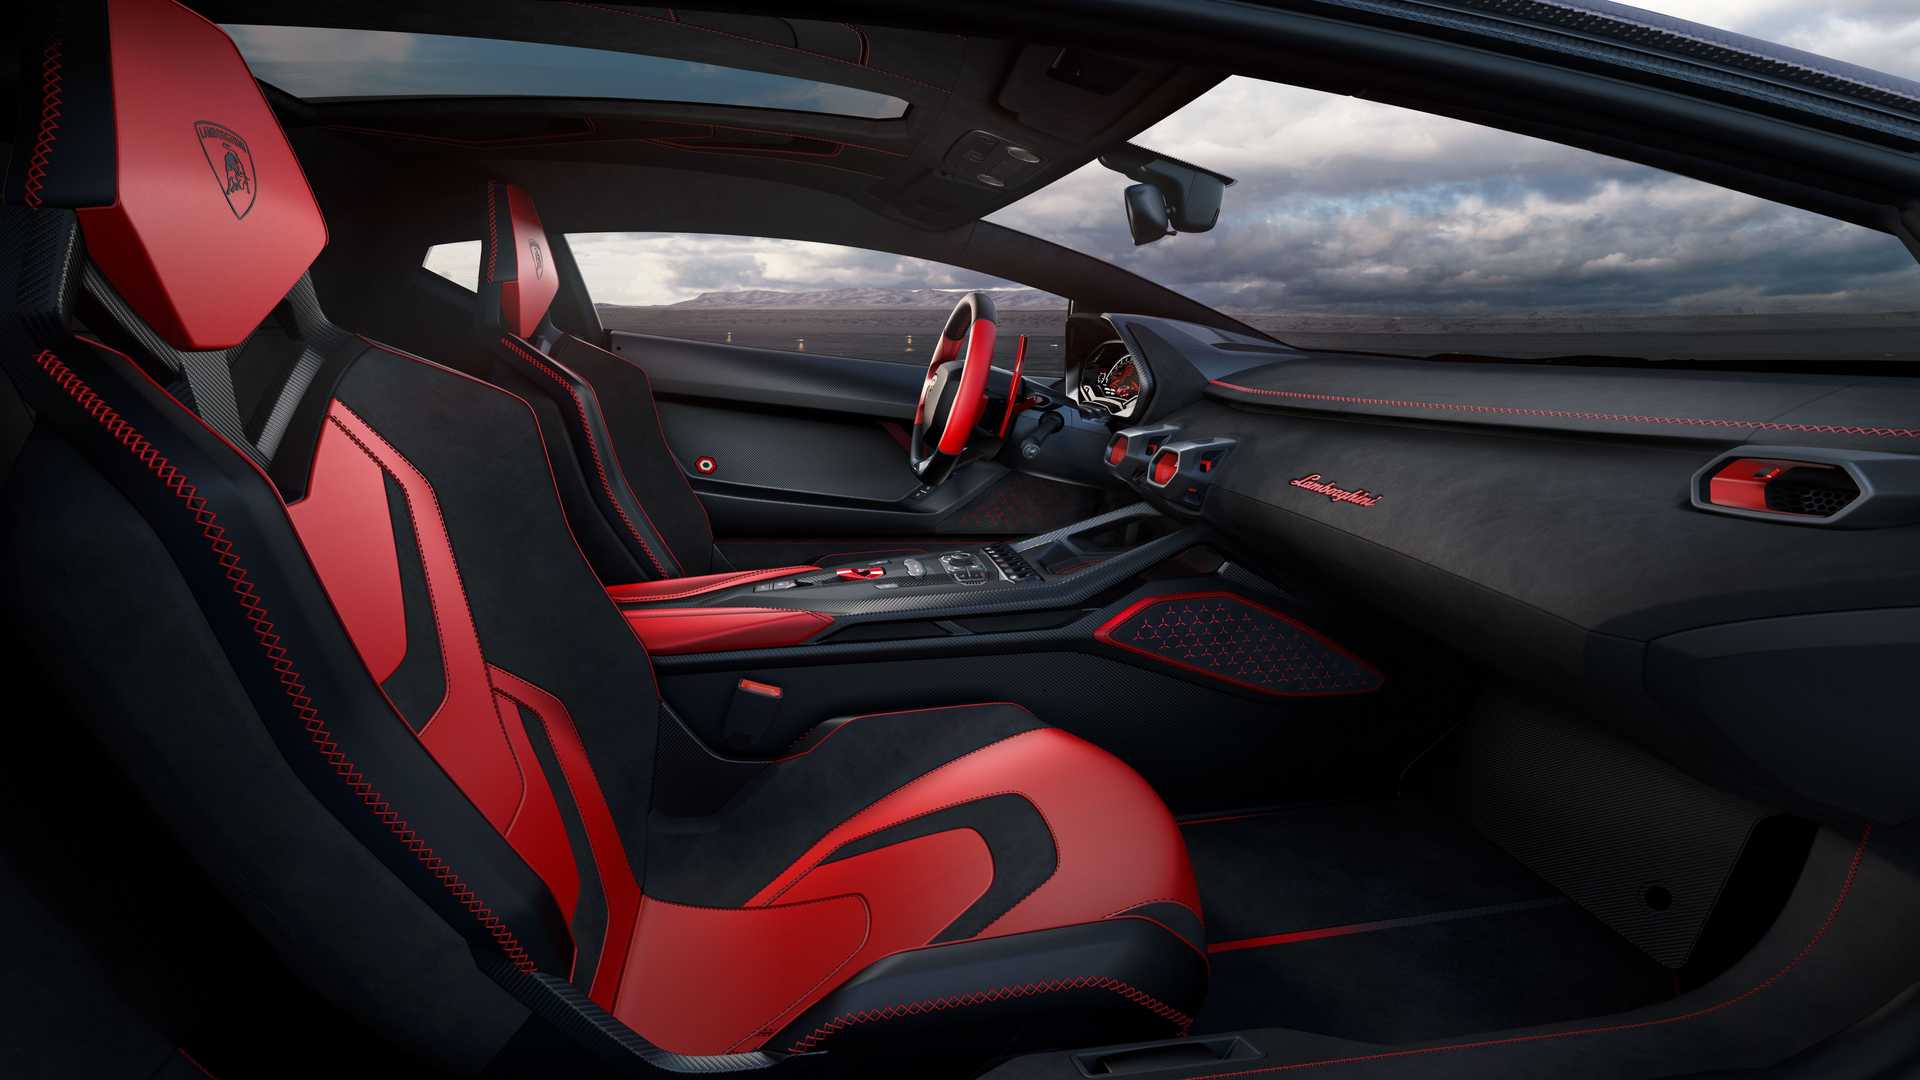 Lamborghini ra mắt bộ đôi siêu xe V12 chạy xăng cuối cùng, sau đây sẽ toàn siêu xe điện êm ru chưa biết nẹt pô kiểu gì - ảnh 10